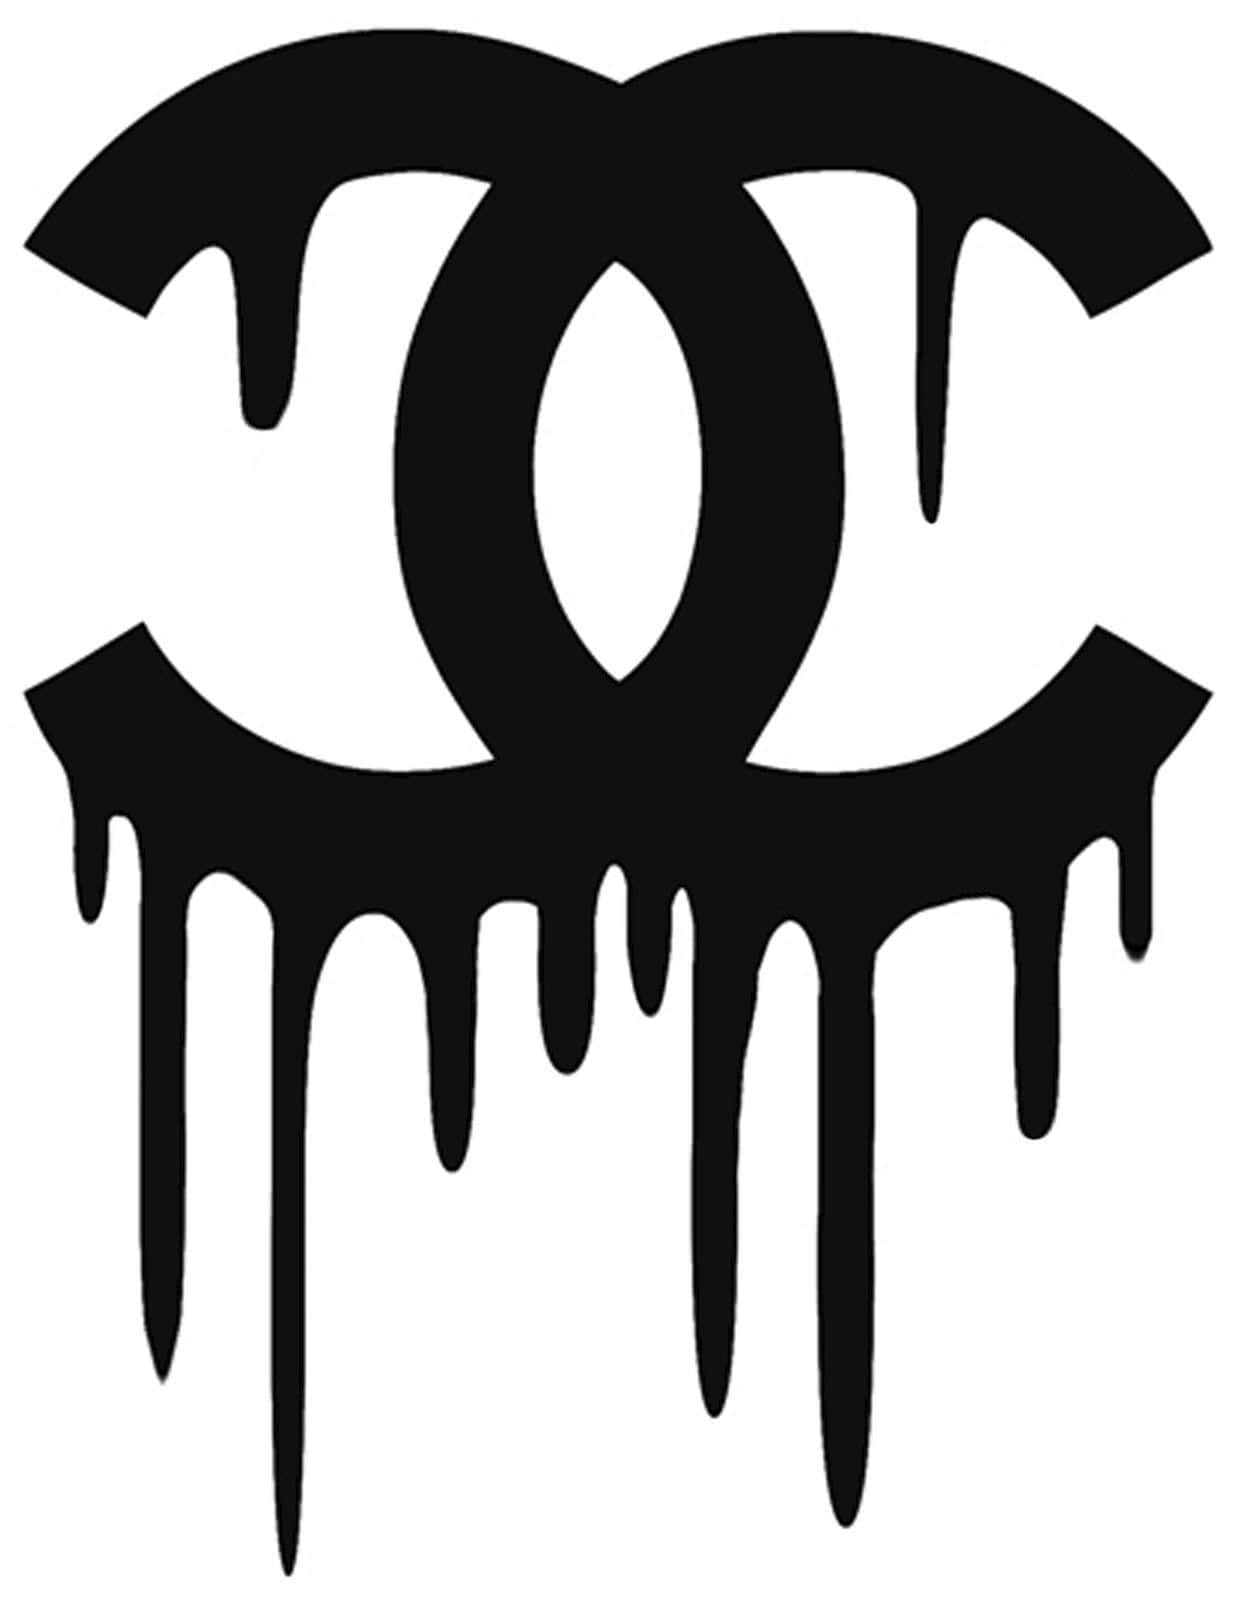 Klassischerhintergrund Mit Dem Chanel-logo.